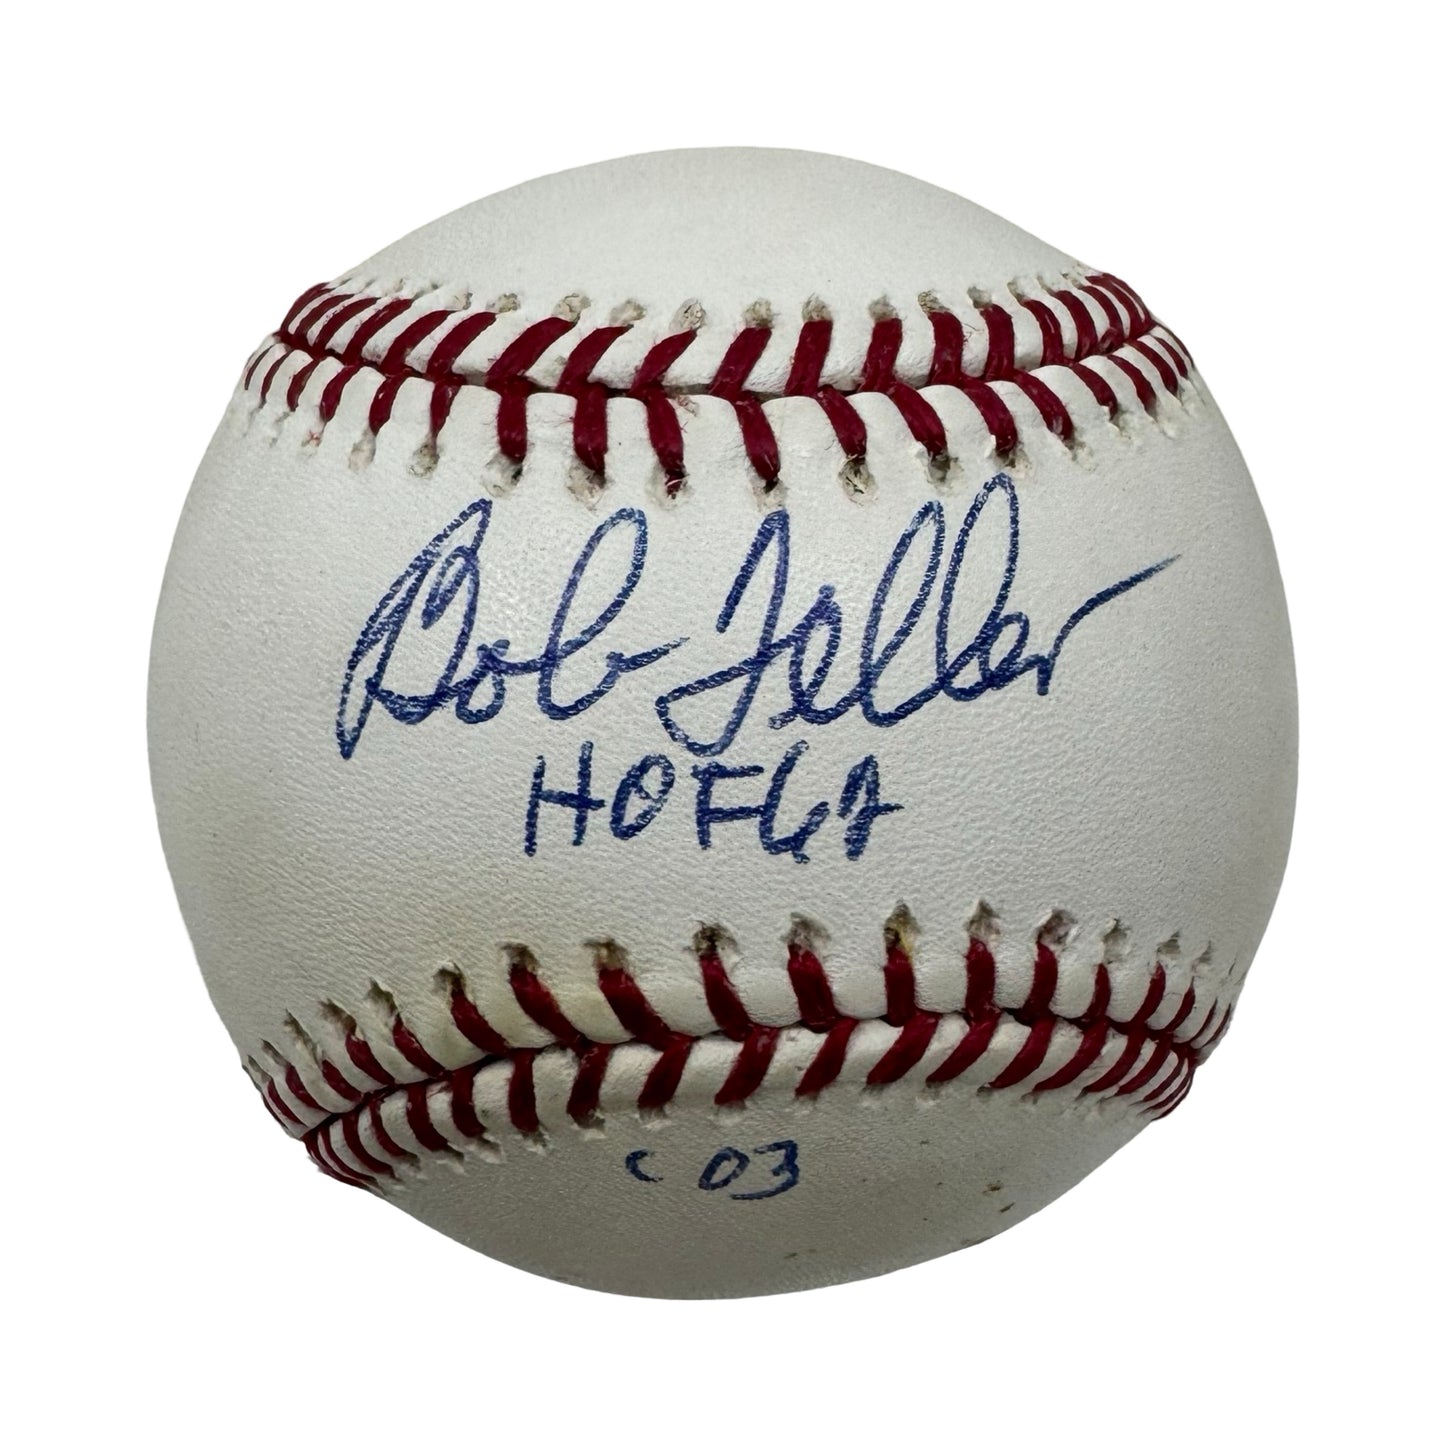 Bob Feller Autographed Official American League Baseball "HOF 62, '03" Inscription JSA